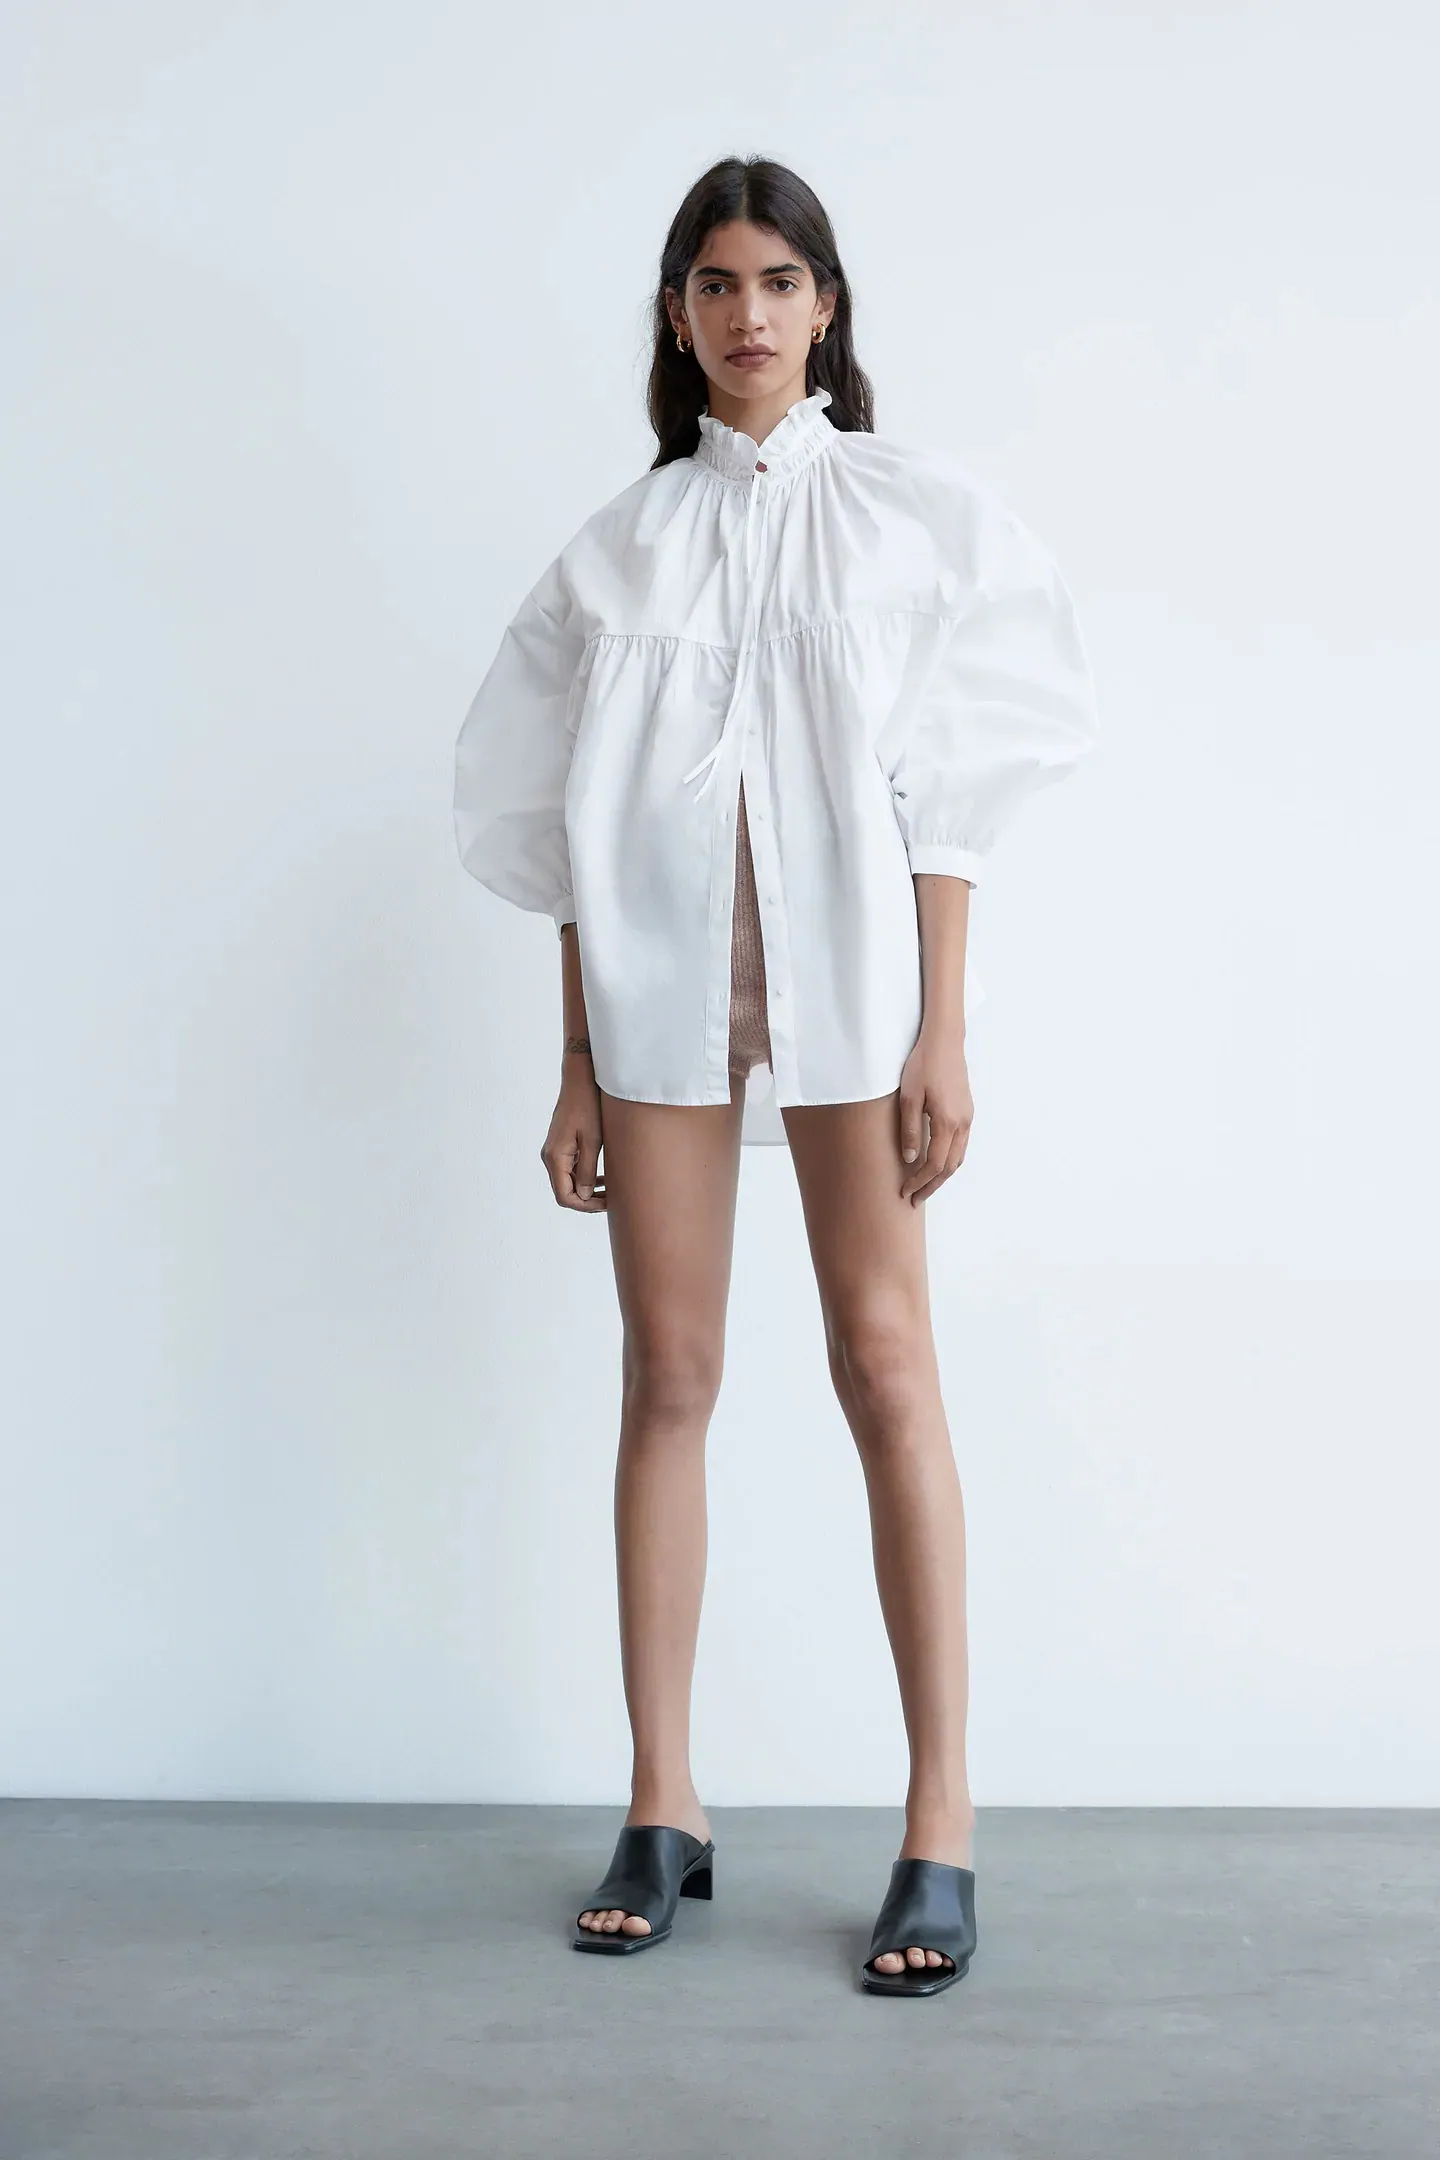 Fotos: Las camisas blancas bonitas de las rebajas Zara que serán tendencia esta primavera y que ya nos hacen soñar con tiempo | Mujer Hoy